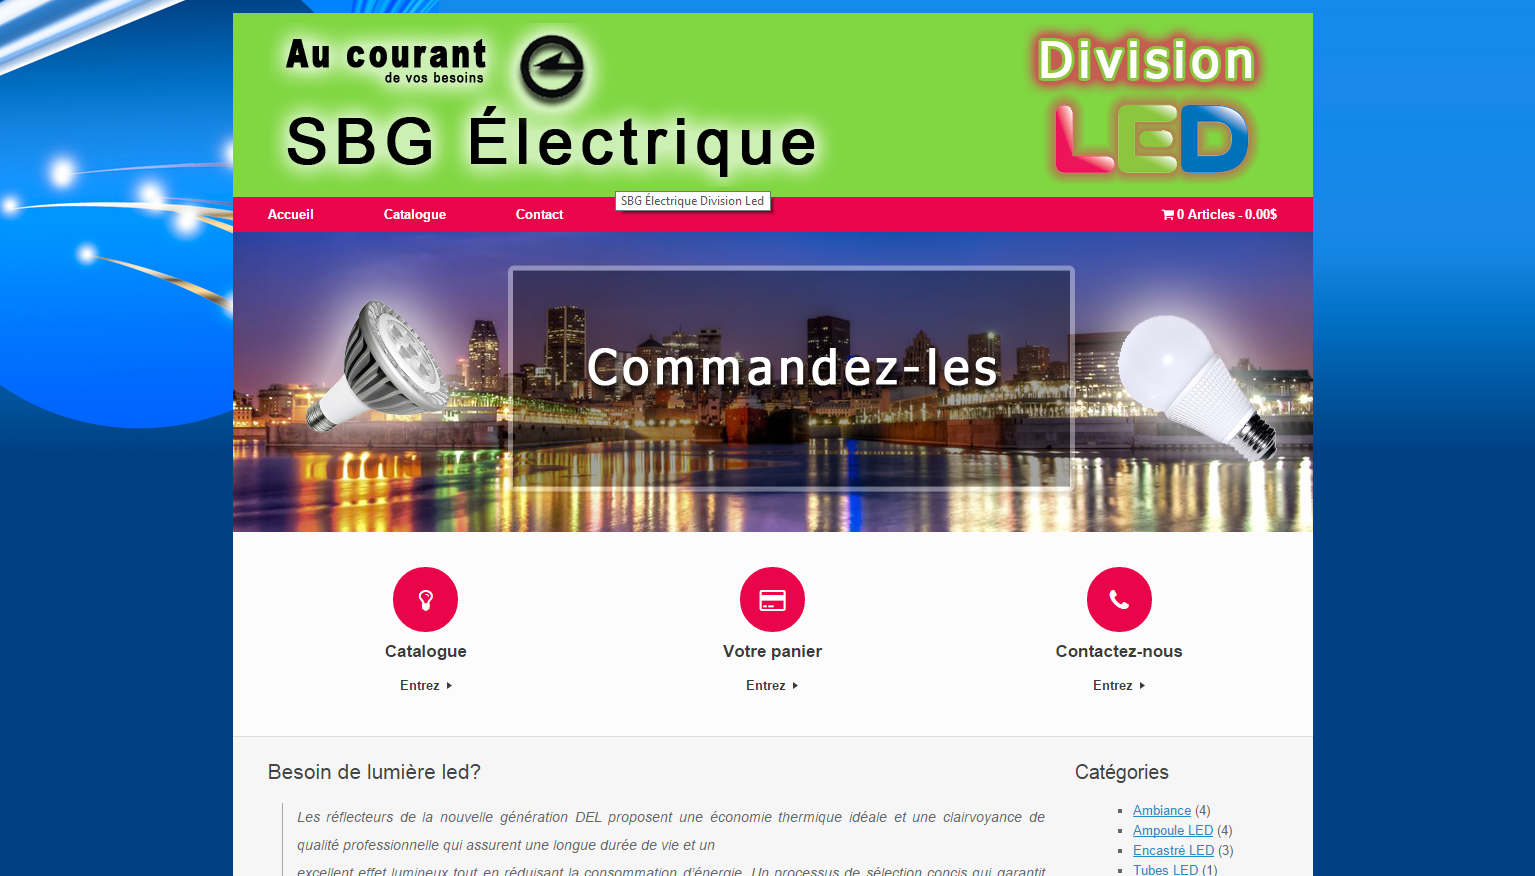 SBG Électrique division LED